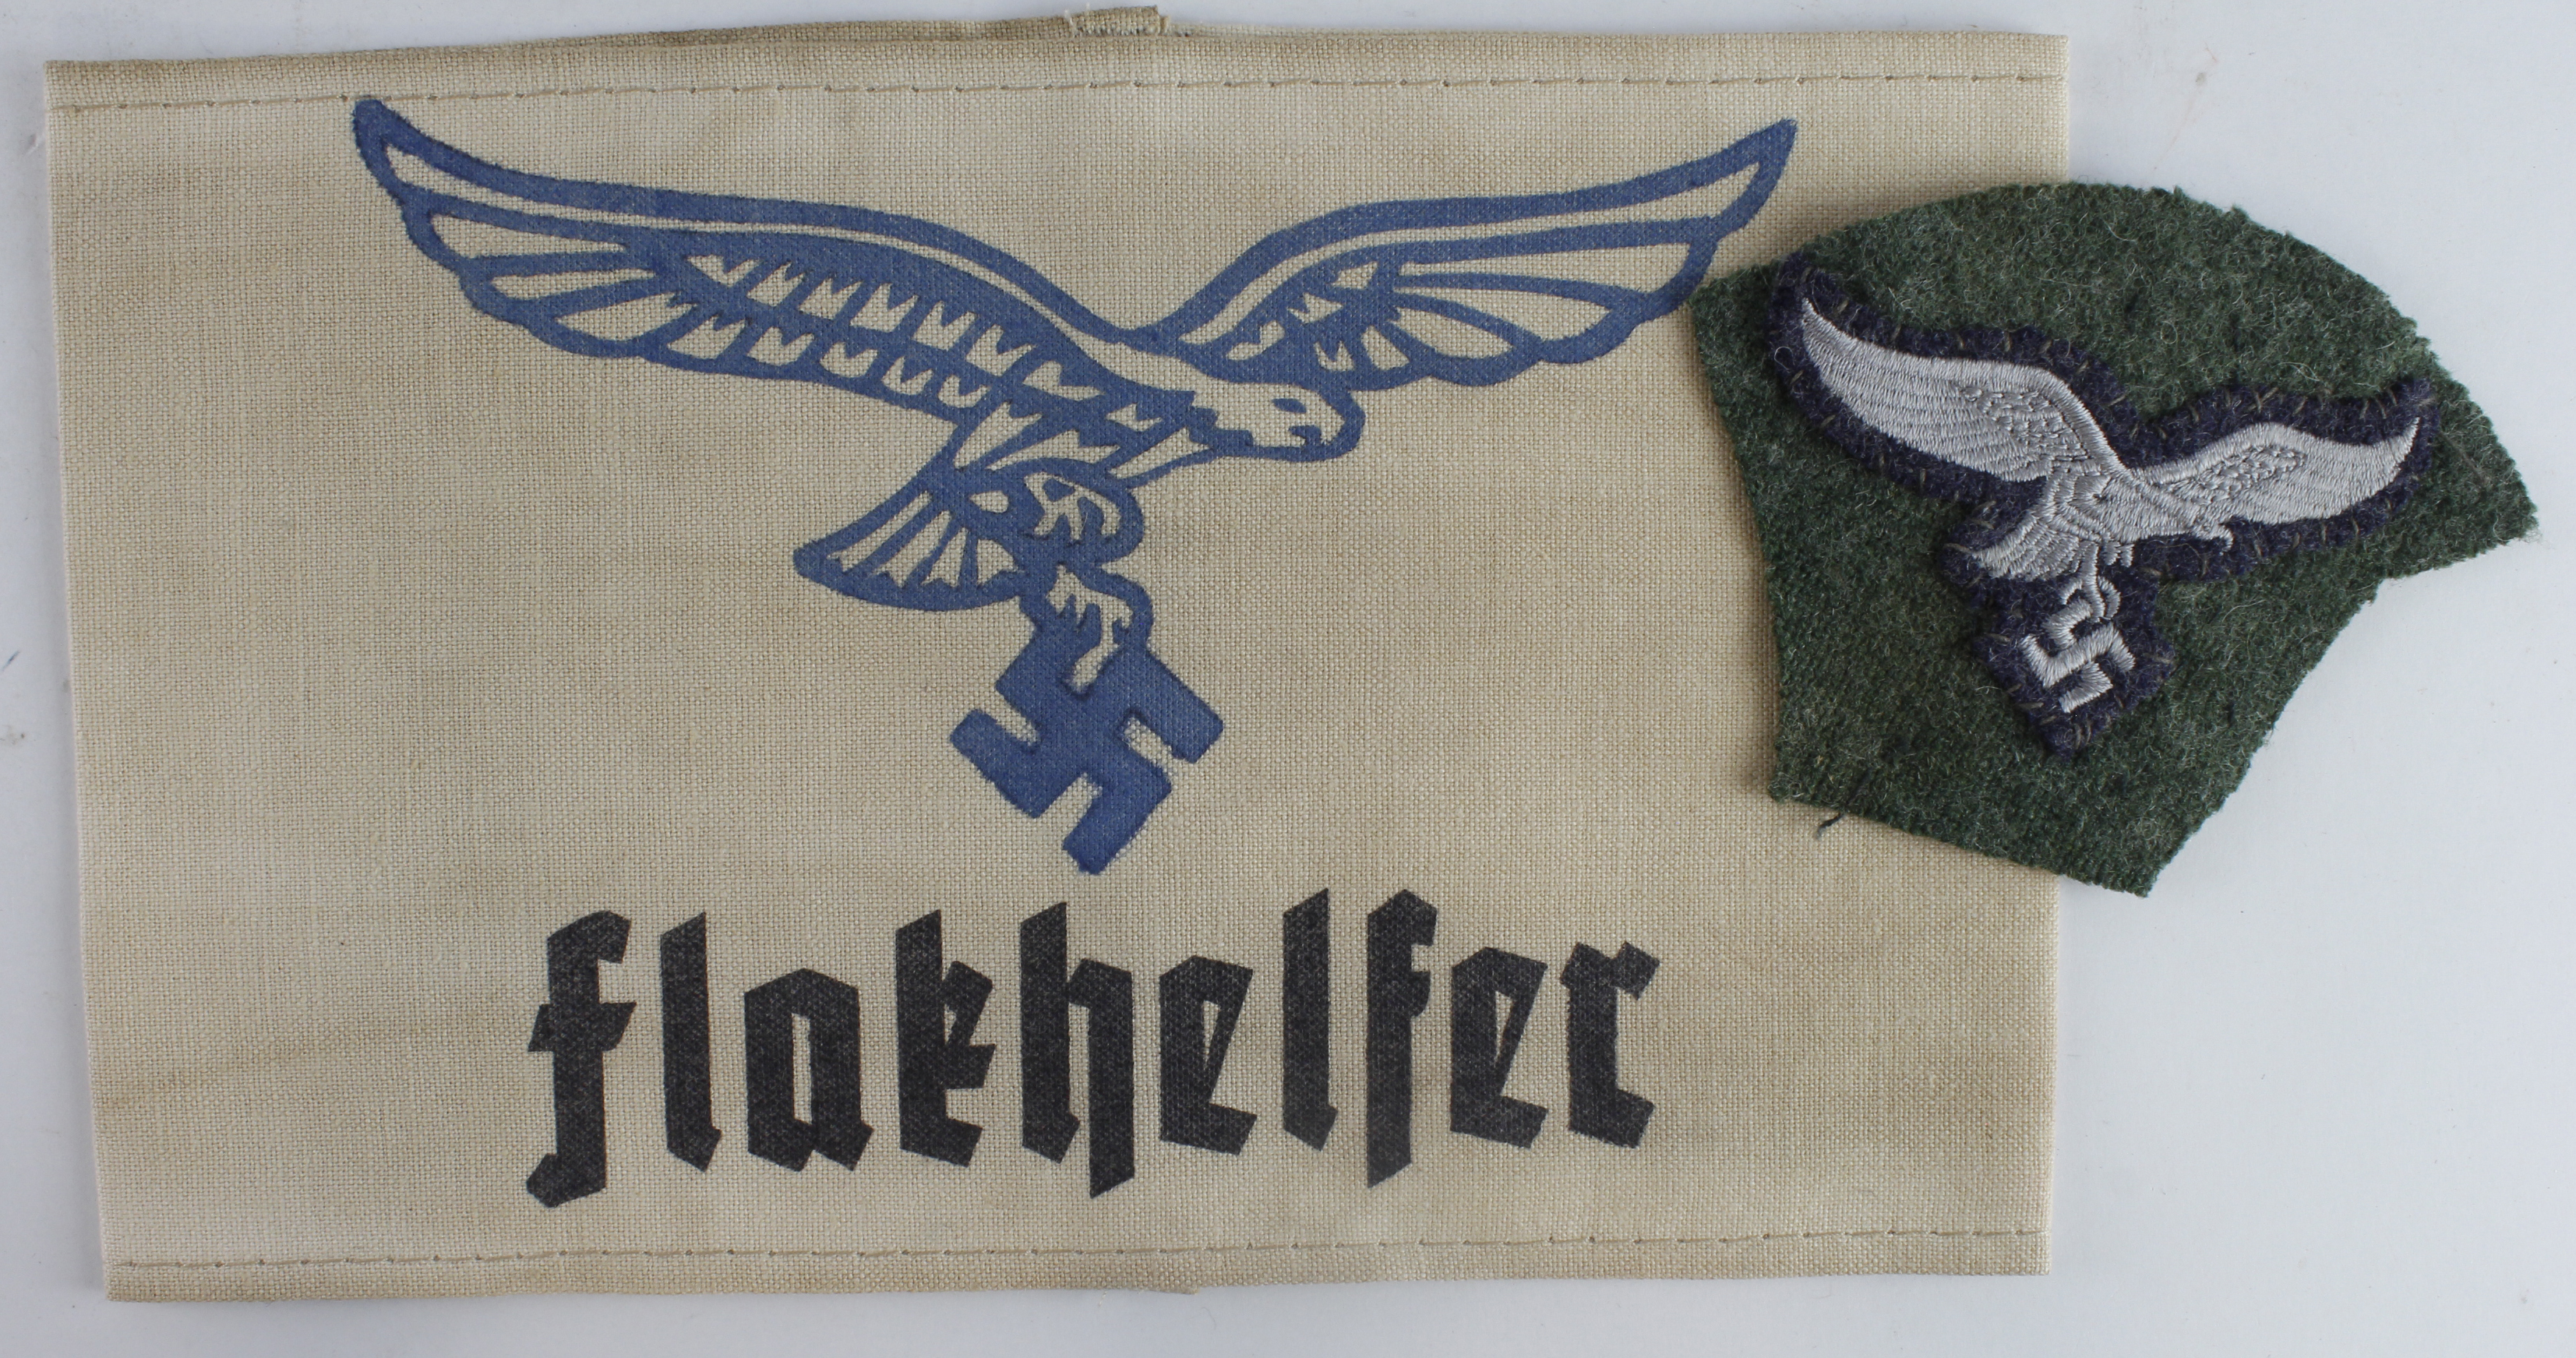 German Luftwaffe Flakhelfer arm band with Luftwaffe breast eagle cut of a uniform.